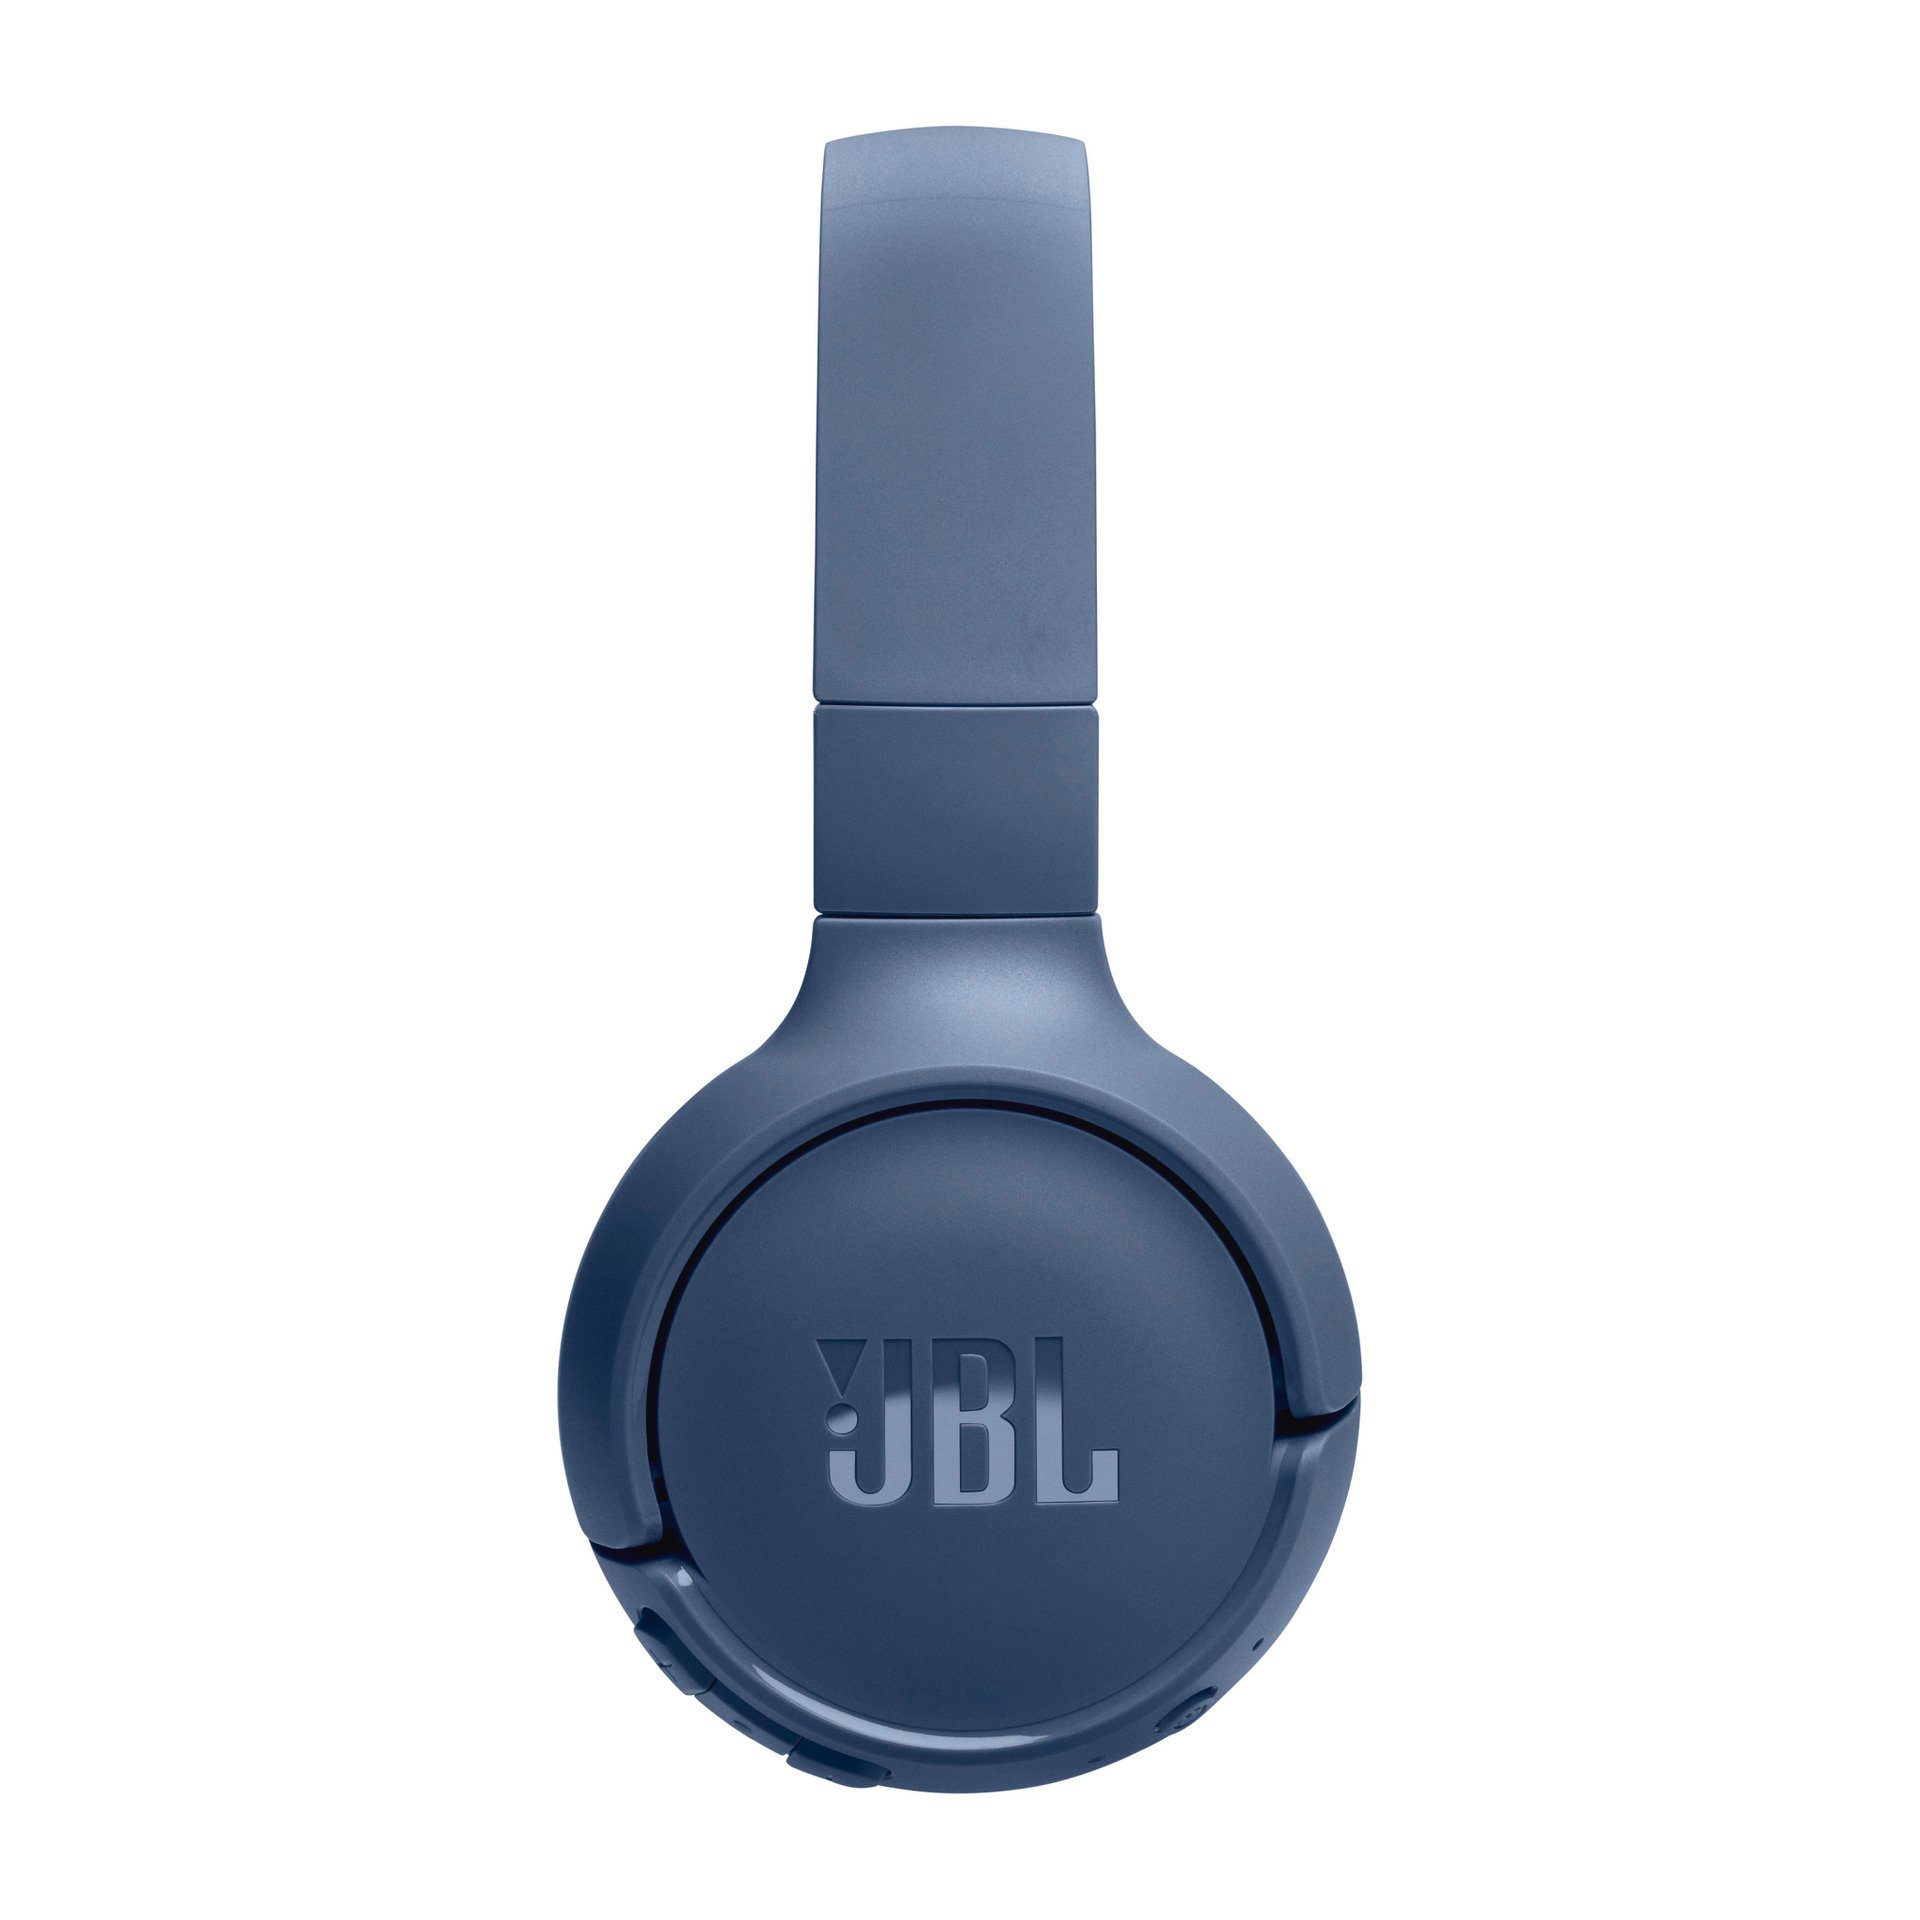 Blau Over-Ear-Kopfhörer JBL BT 520 Tune